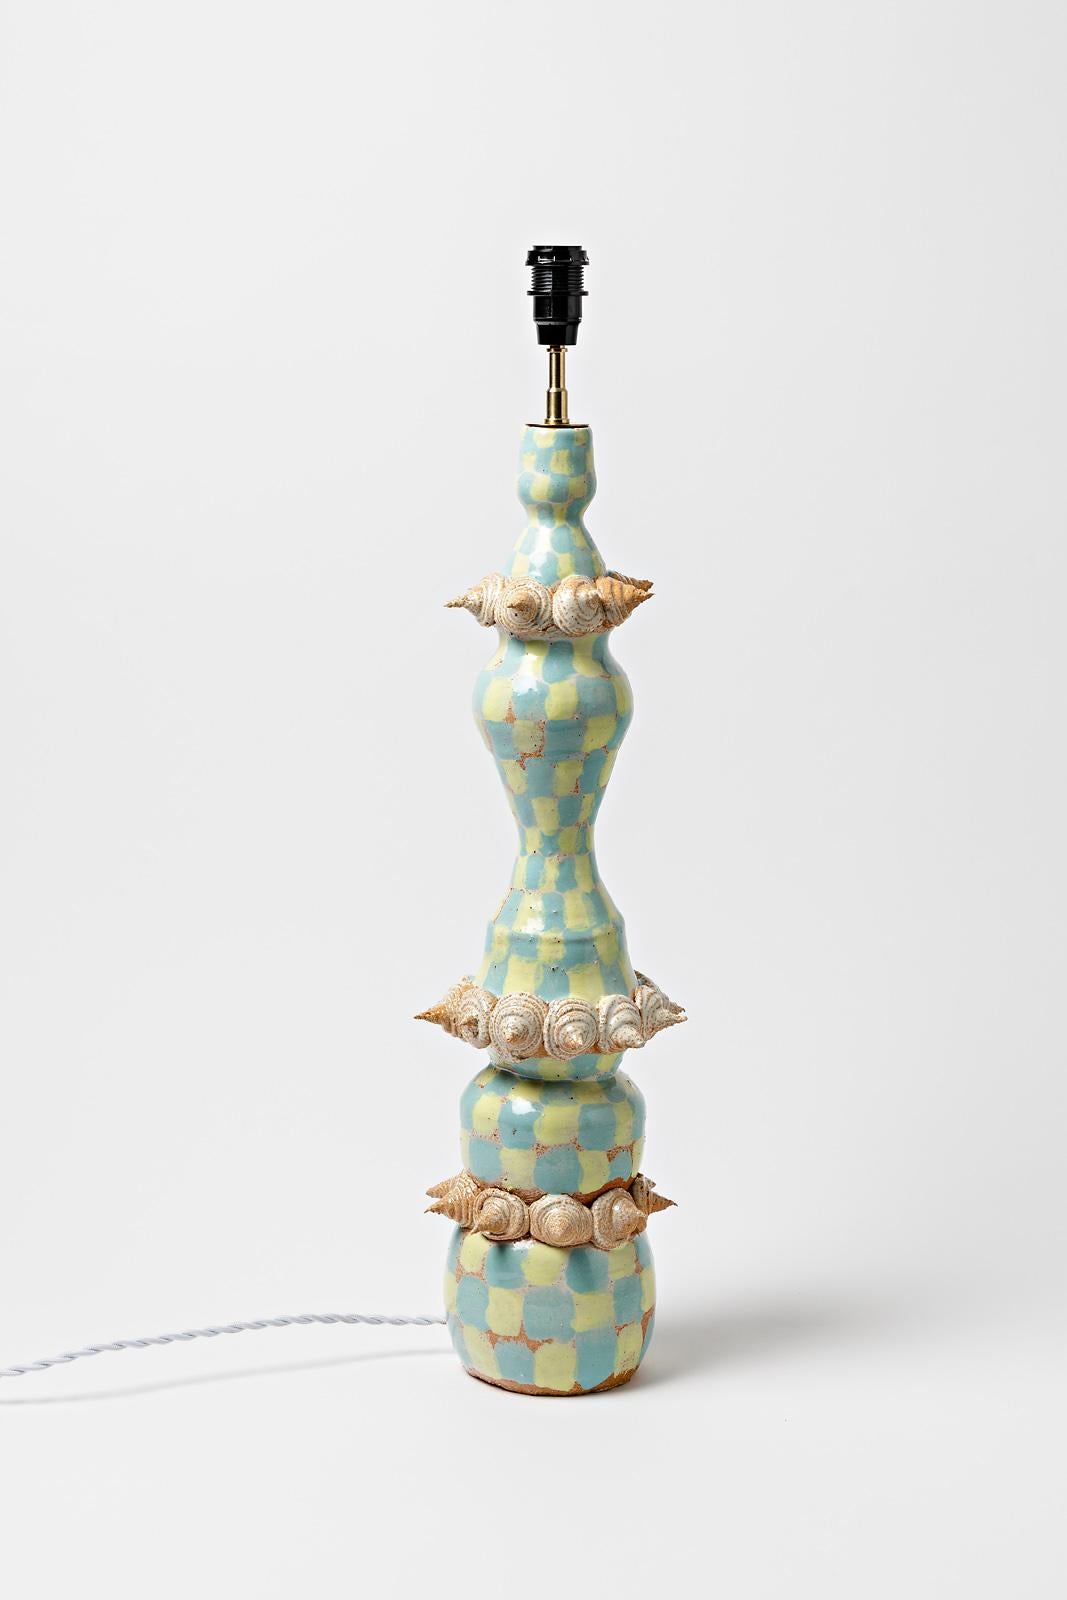 Sauce Mathilde

Elégante grande lampe de table en céramique réalisée en 2021, pièce unique.

Couleurs originales des émaux céramiques bleus, jaunes et orange.

Signé sous la base

Le système électrique est neuf

Mesures de la céramique -